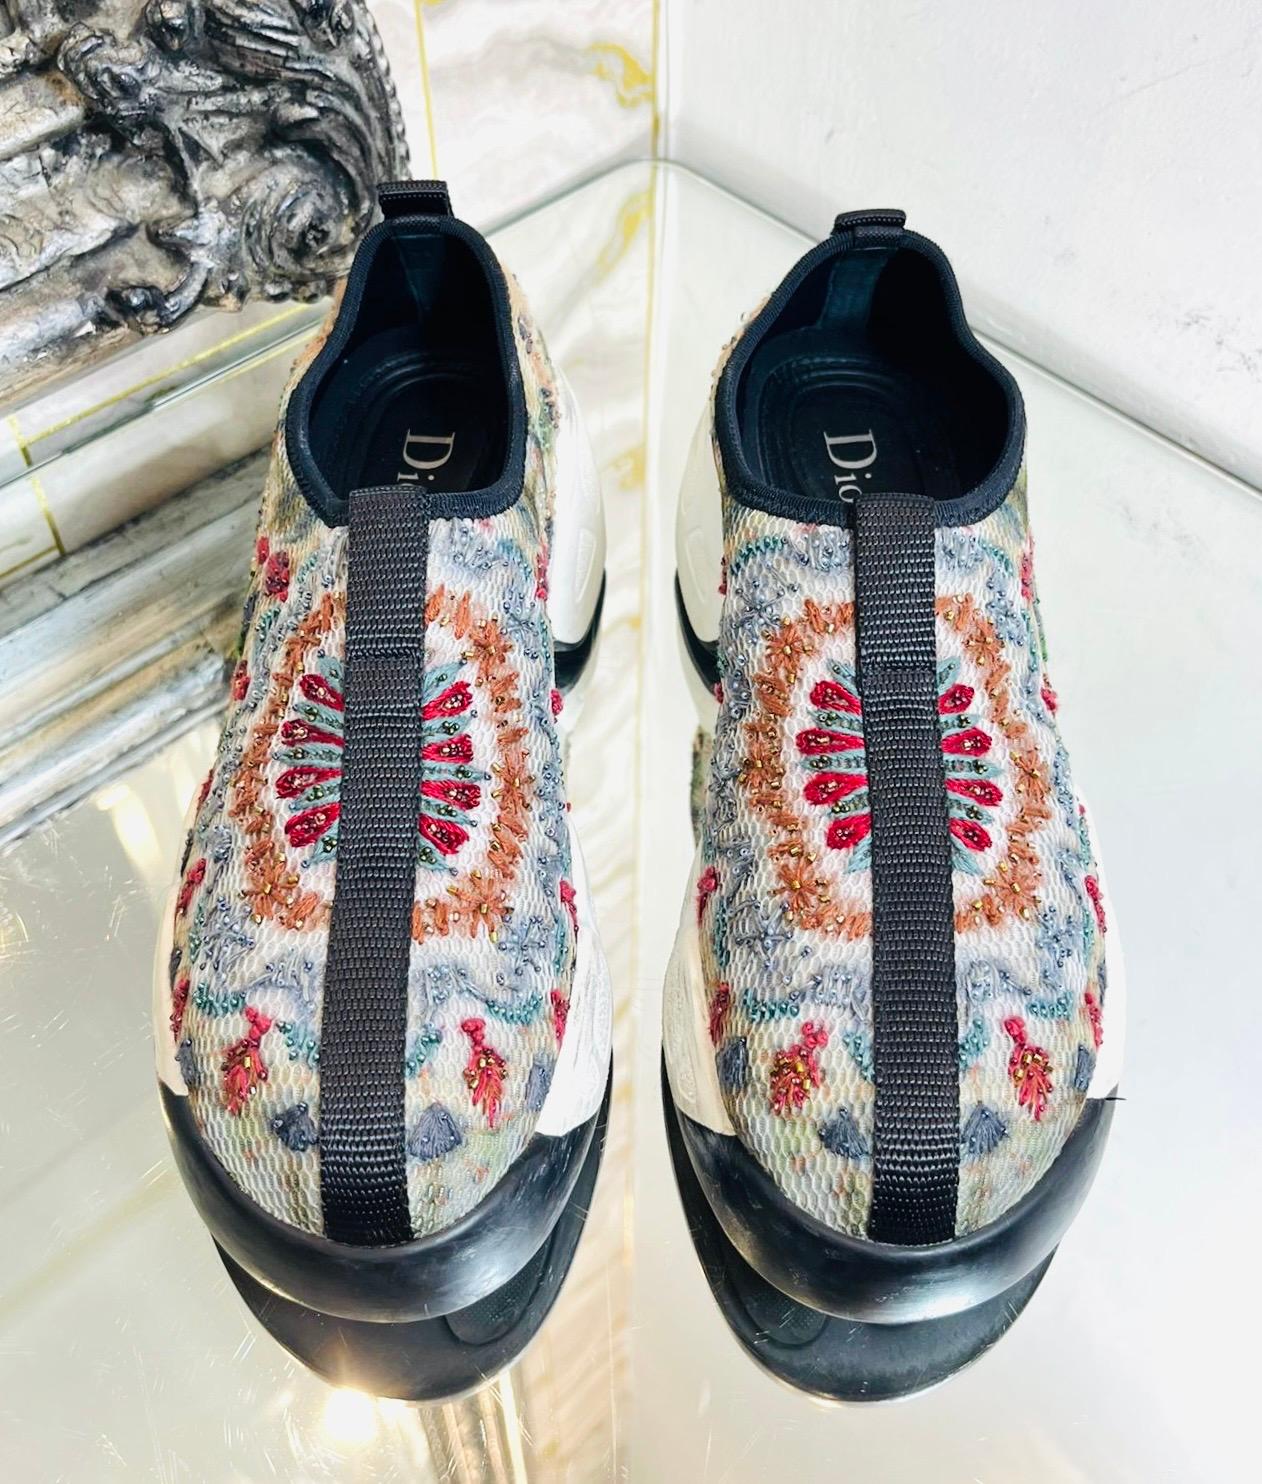 Dior Perlenbestickte Mesh-Sneakers

Off-white Slip-on-Sneaker mit mehrfarbigen, perlenverzierten Stickereien.

Mit Gravur 